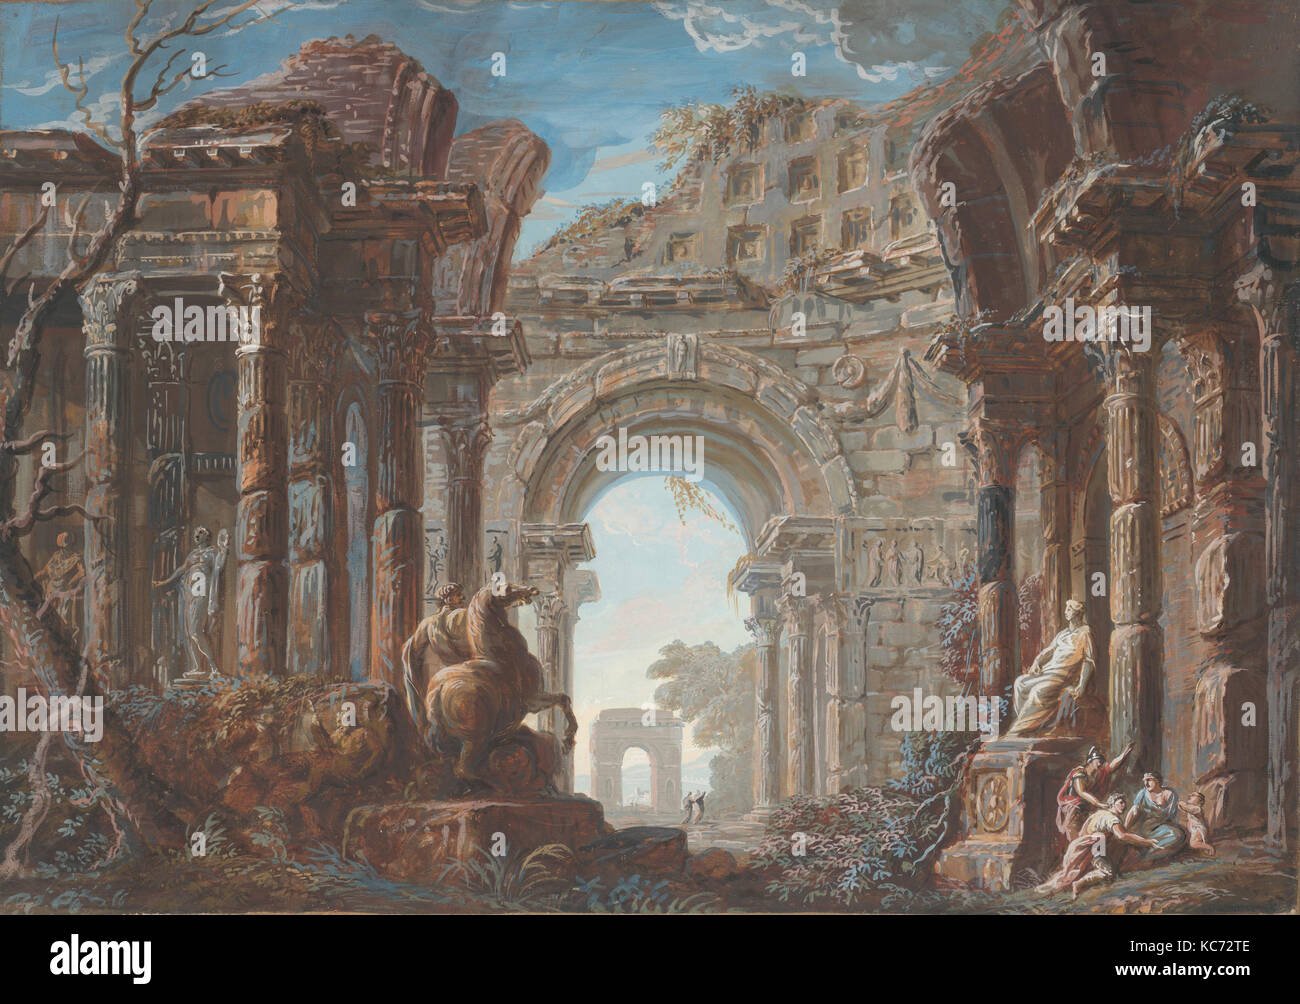 Architectural Capriccio with a Monumental Arch, Jean Nicolas Servandoni, 18th century Stock Photo